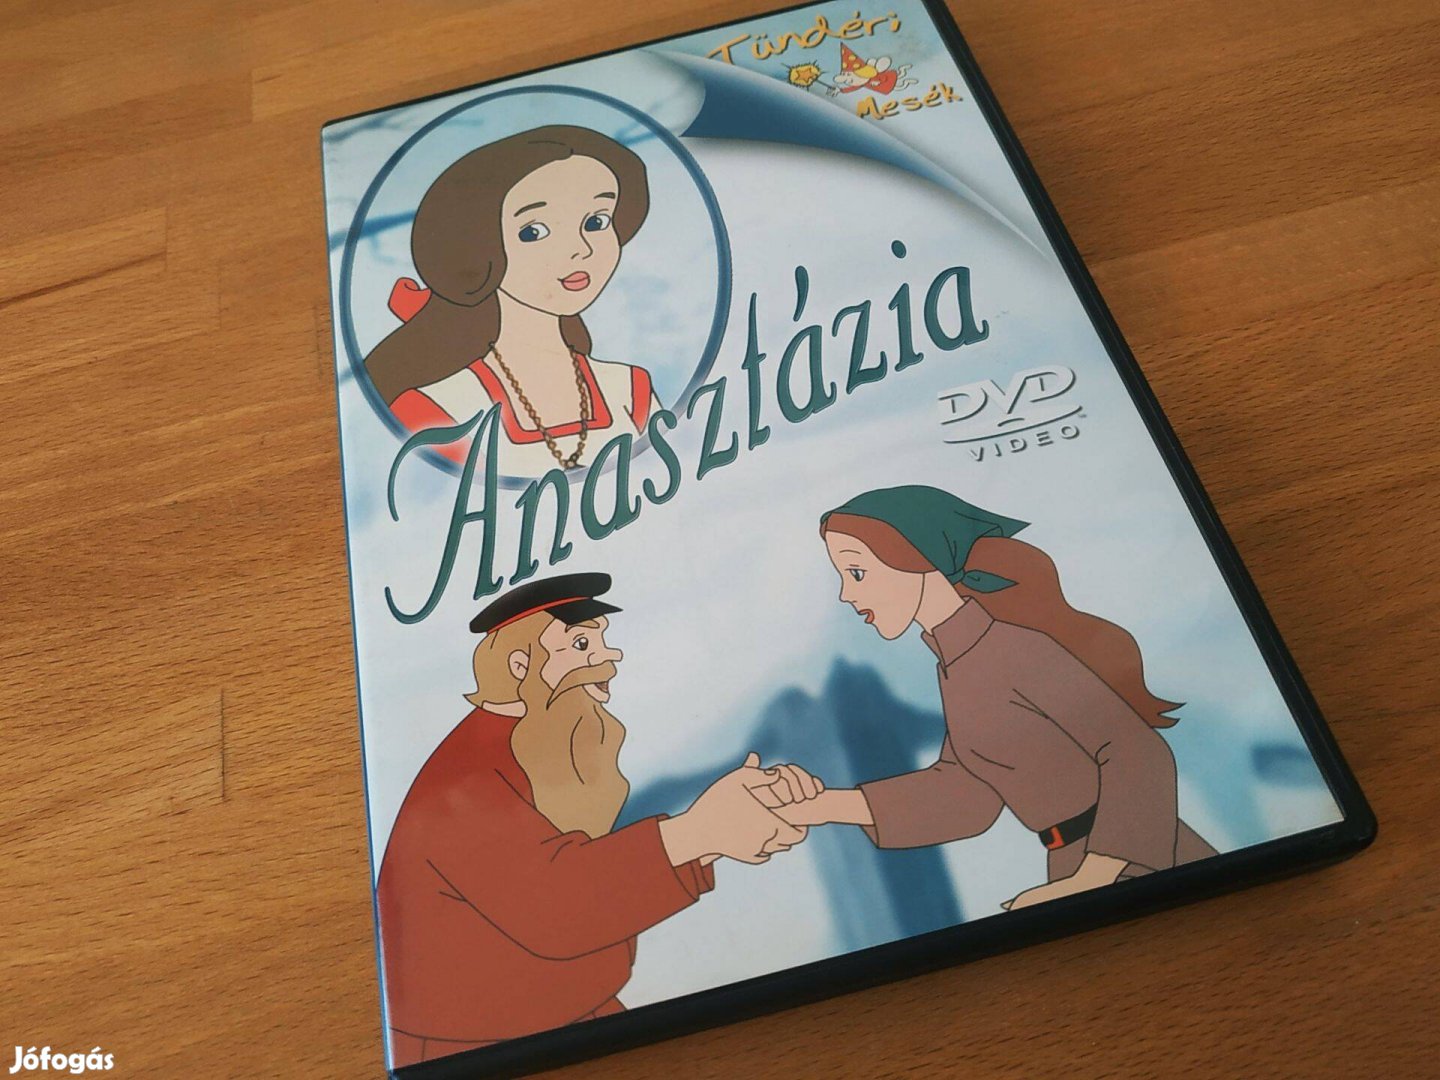 Tündéri mesék - Anasztázia (Comser Kft., családi rajzfilm, 50p, DVD)